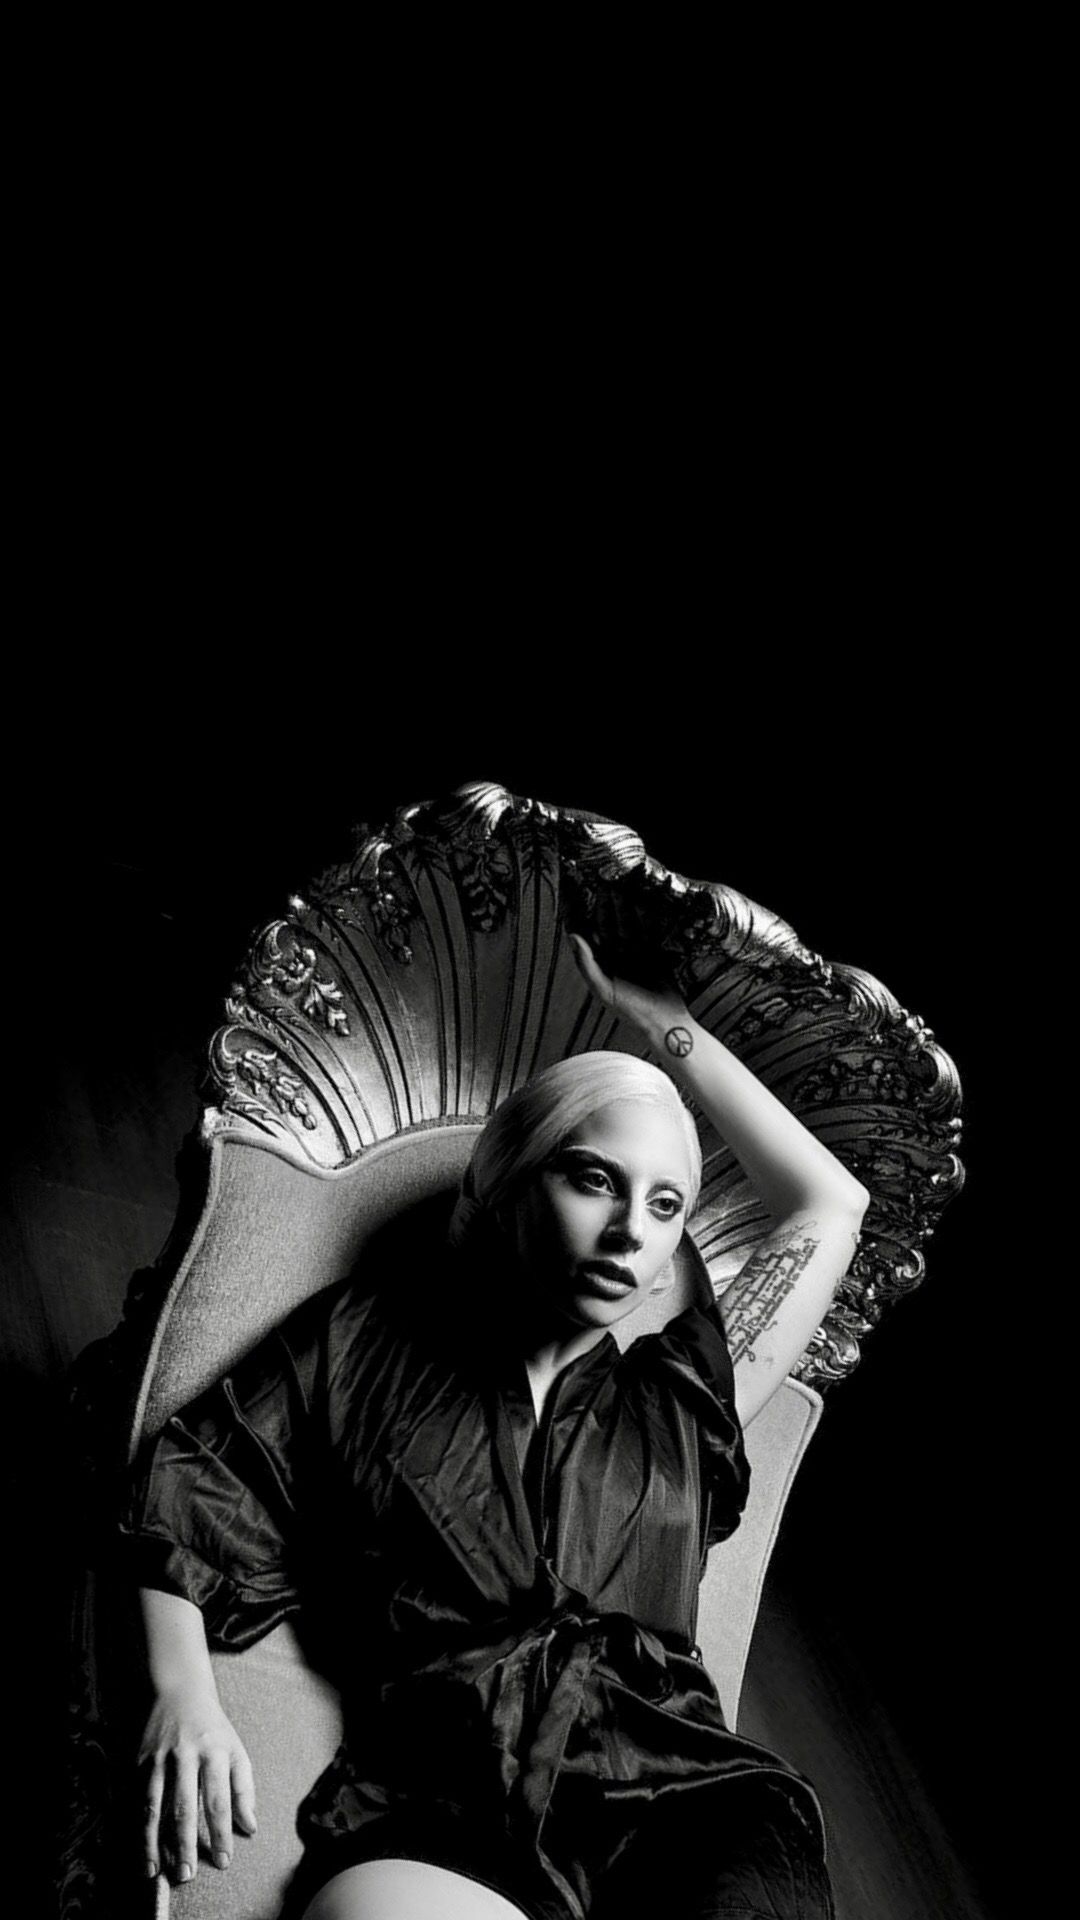 Lady Gaga. Lady gaga picture, Lady gaga photo, Lady gaga